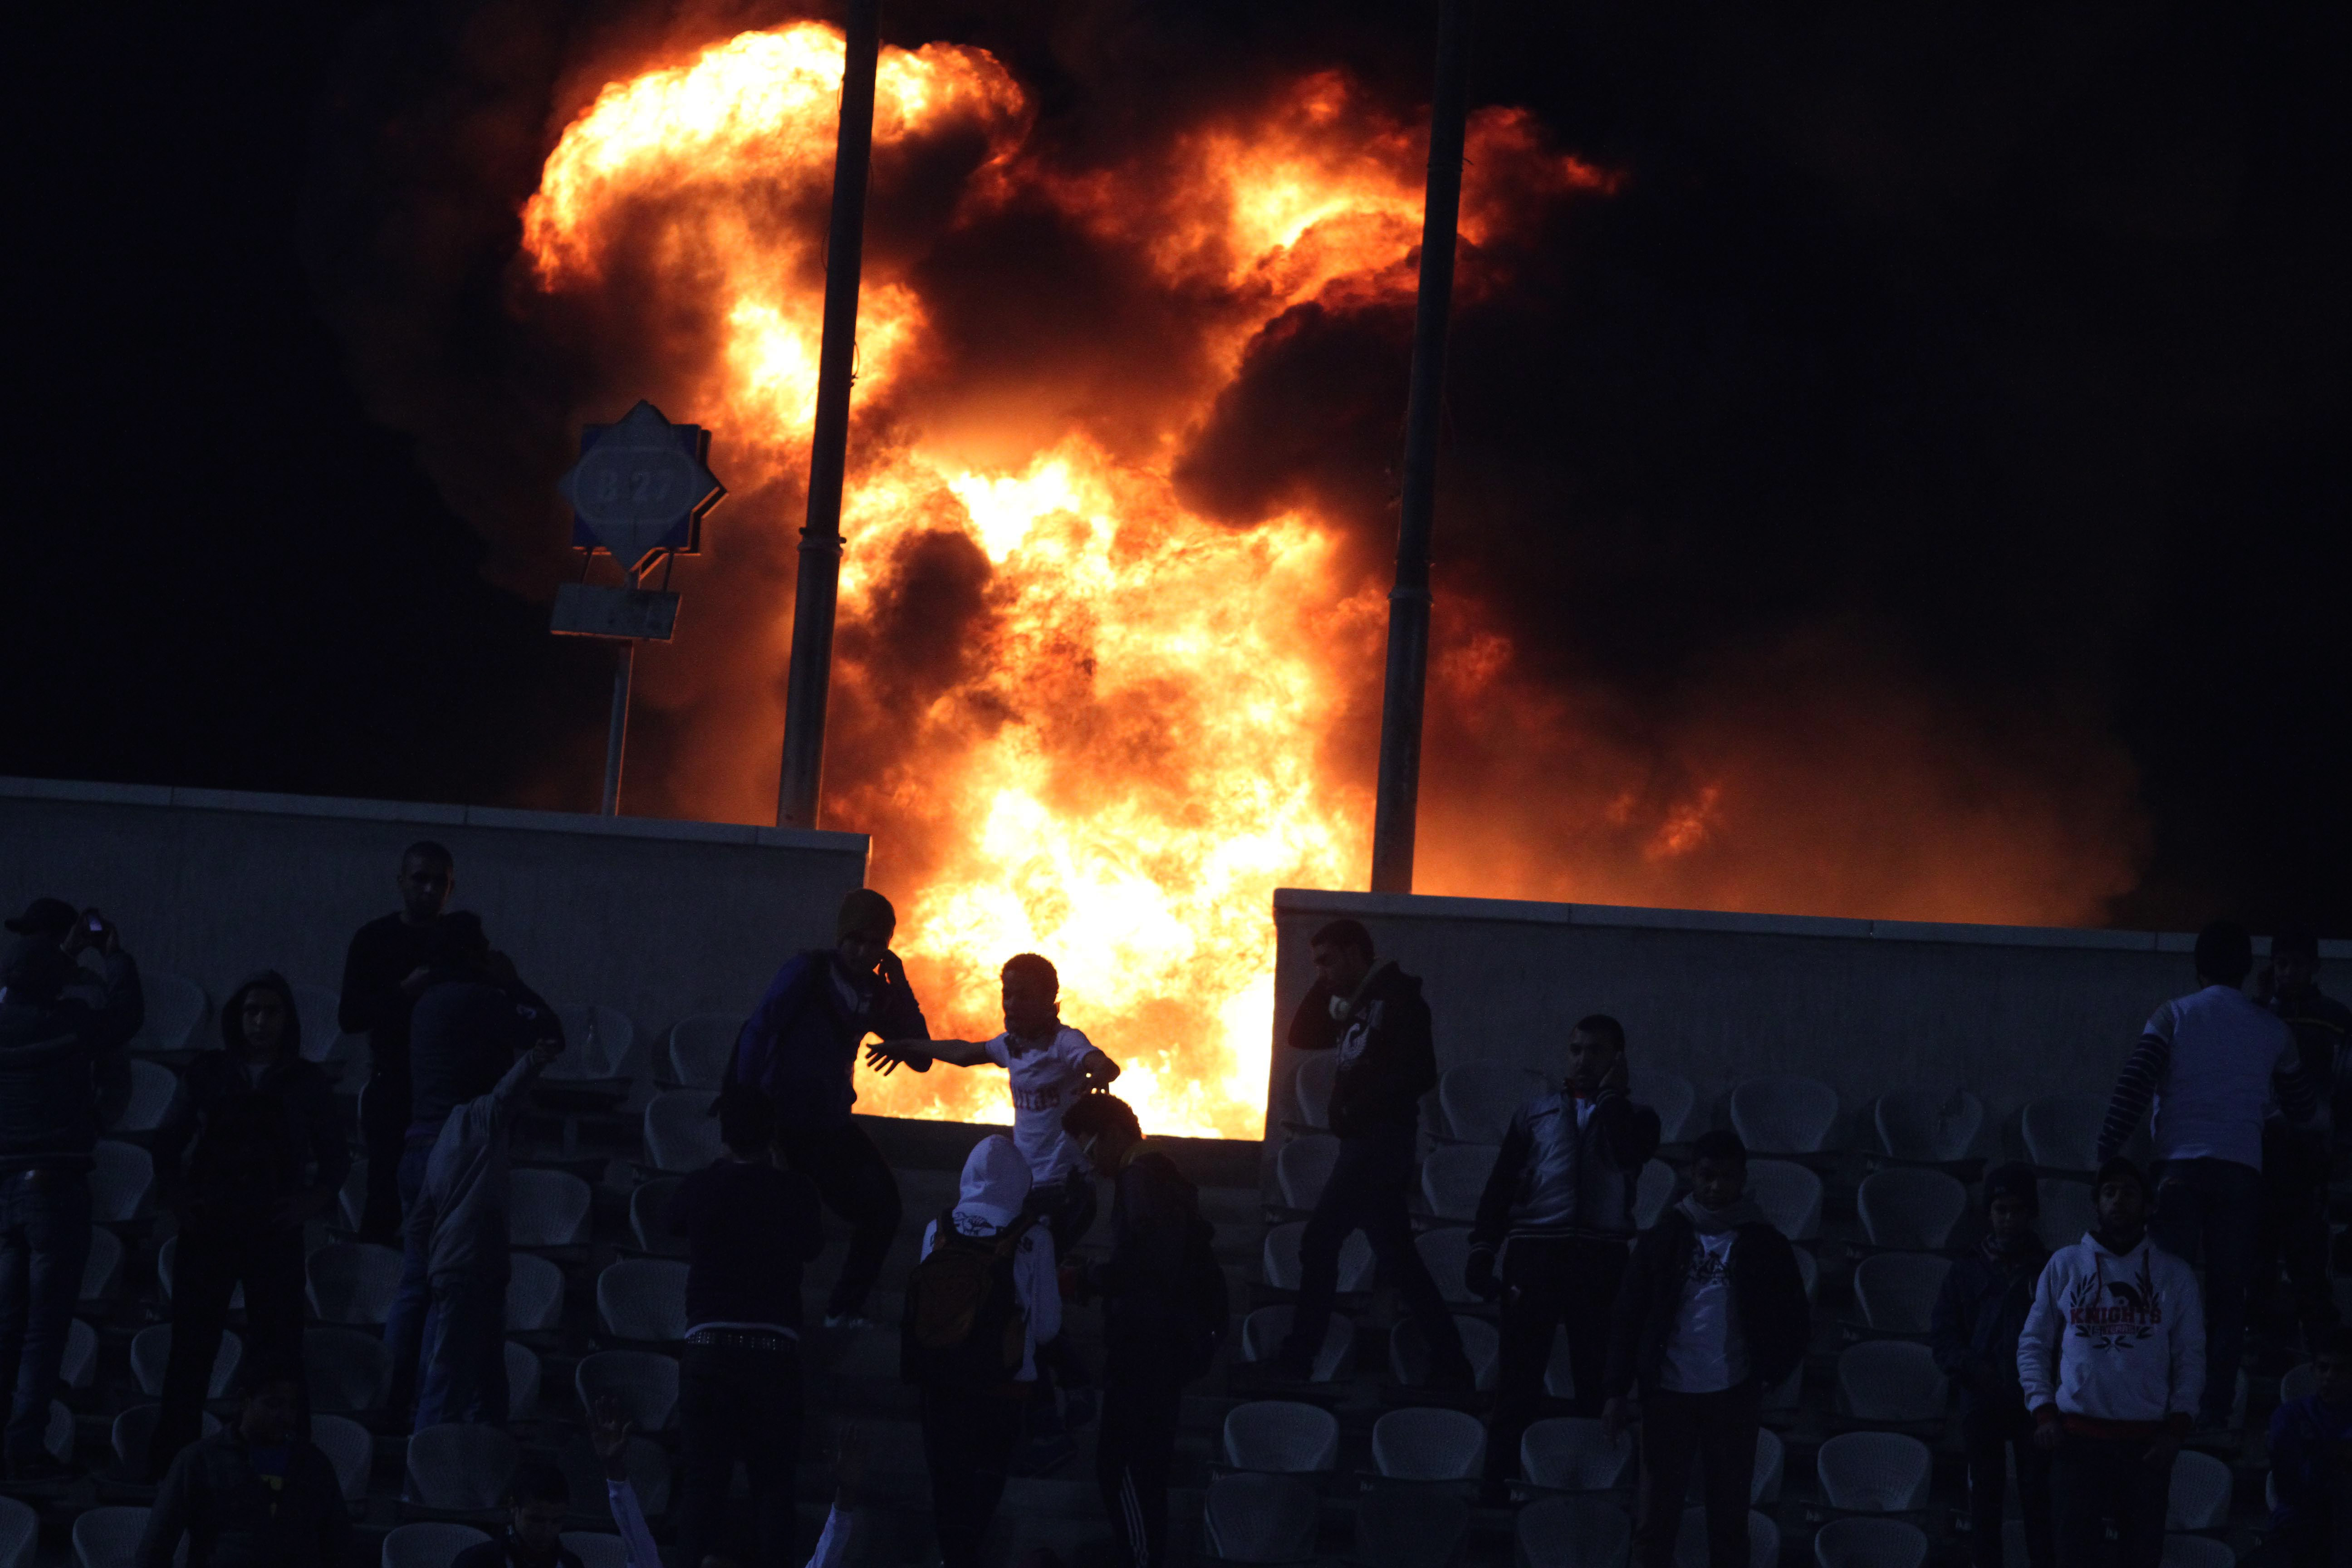 Supportrar satte eld på läktarna efter att matchen avbrutits. Flera klämdes ihjäl på Al-Ahly-sektionen som inte fick utrymmas.